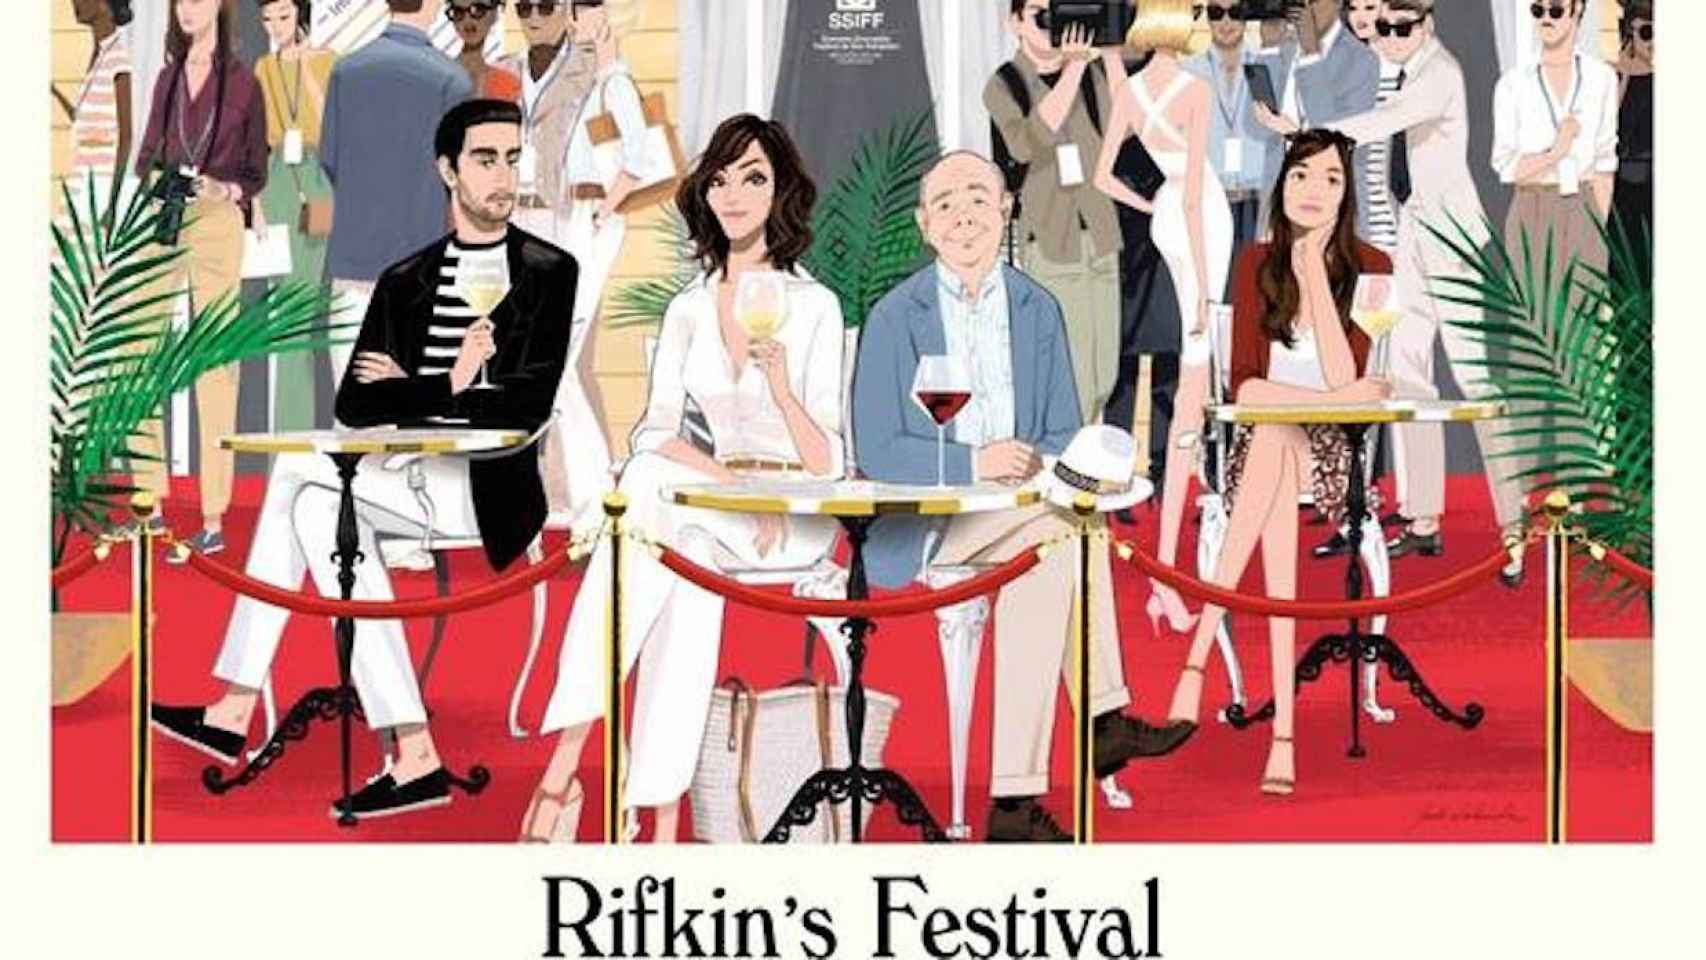 Cartel de la nueva película de Woody Allen, Rifkin's Festival, que ha ilustrado Jordi Labanda / JORDI LABANDA